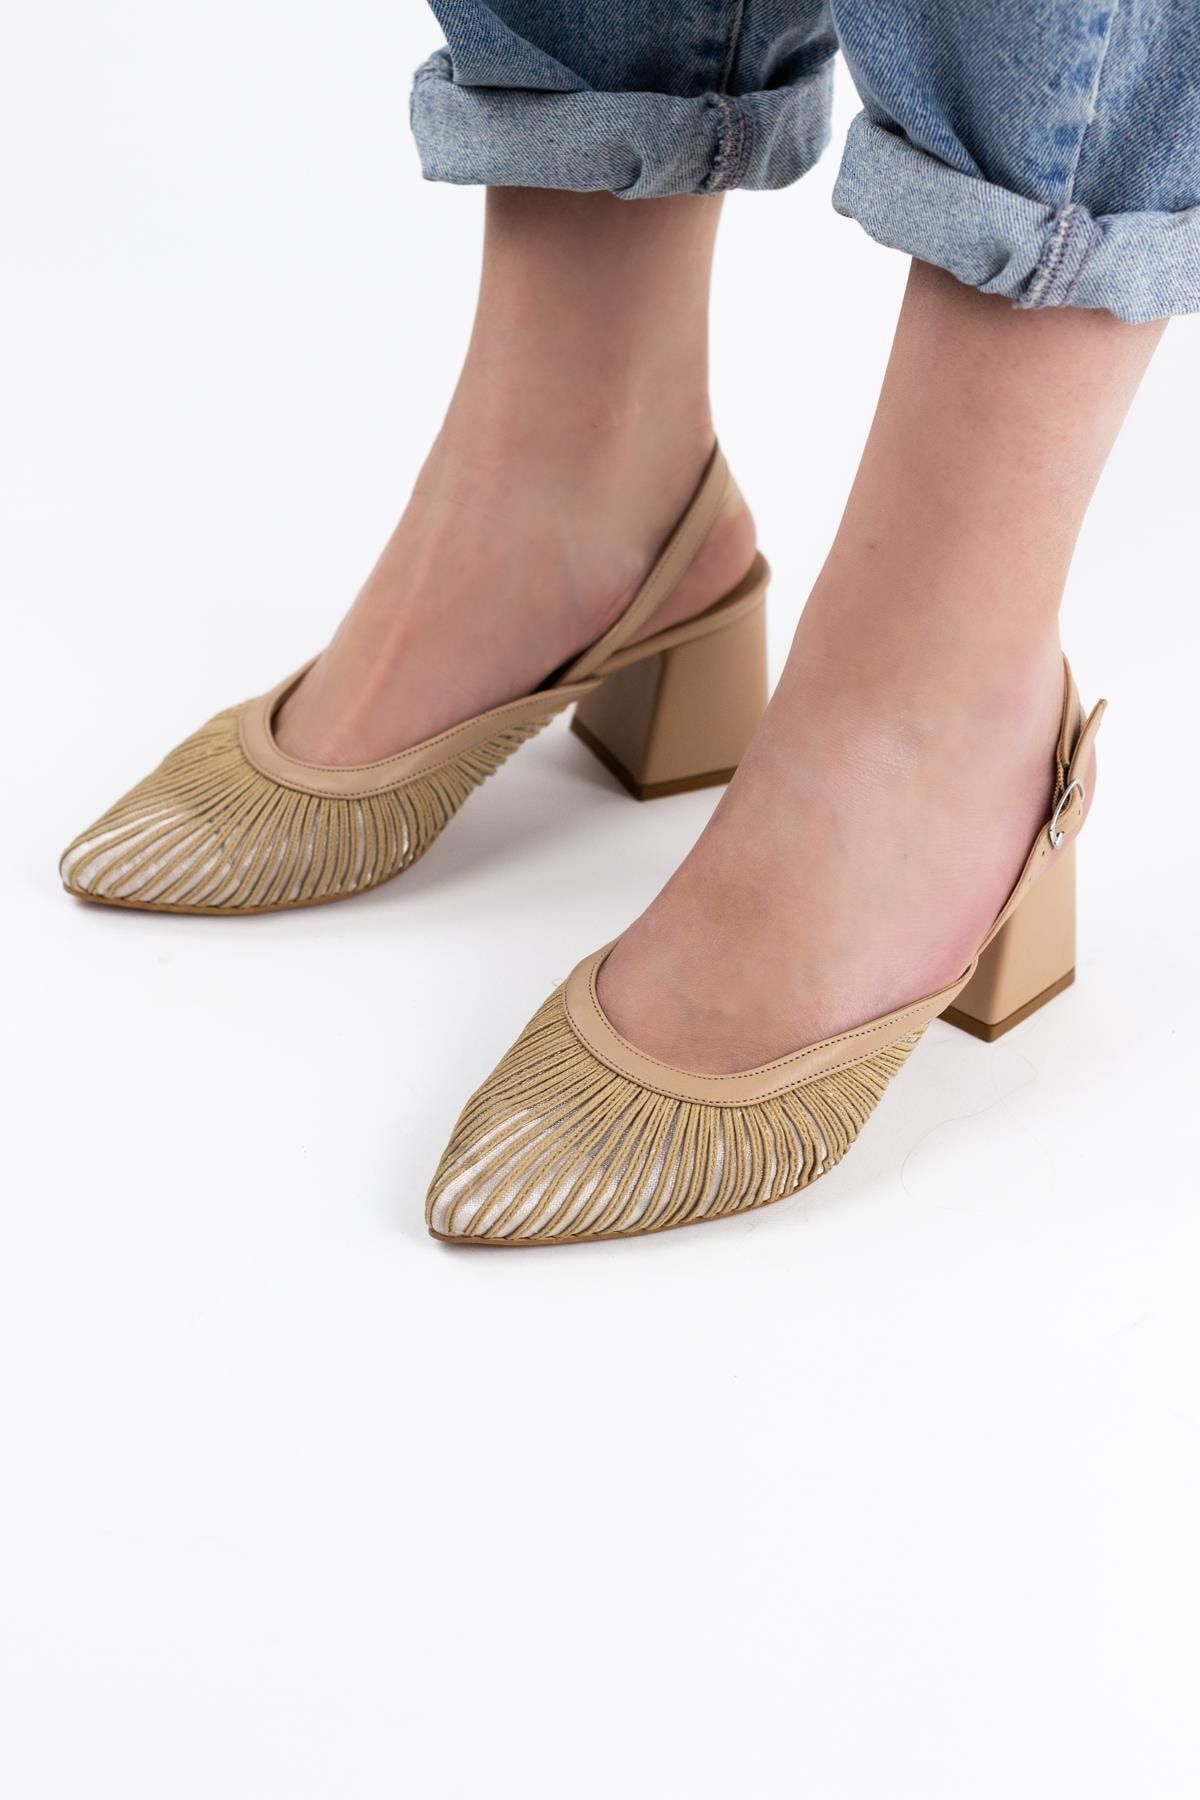 Gökhan Talay Biyeli Tüllü Kadın Kısa Topuklu Ayakkabı